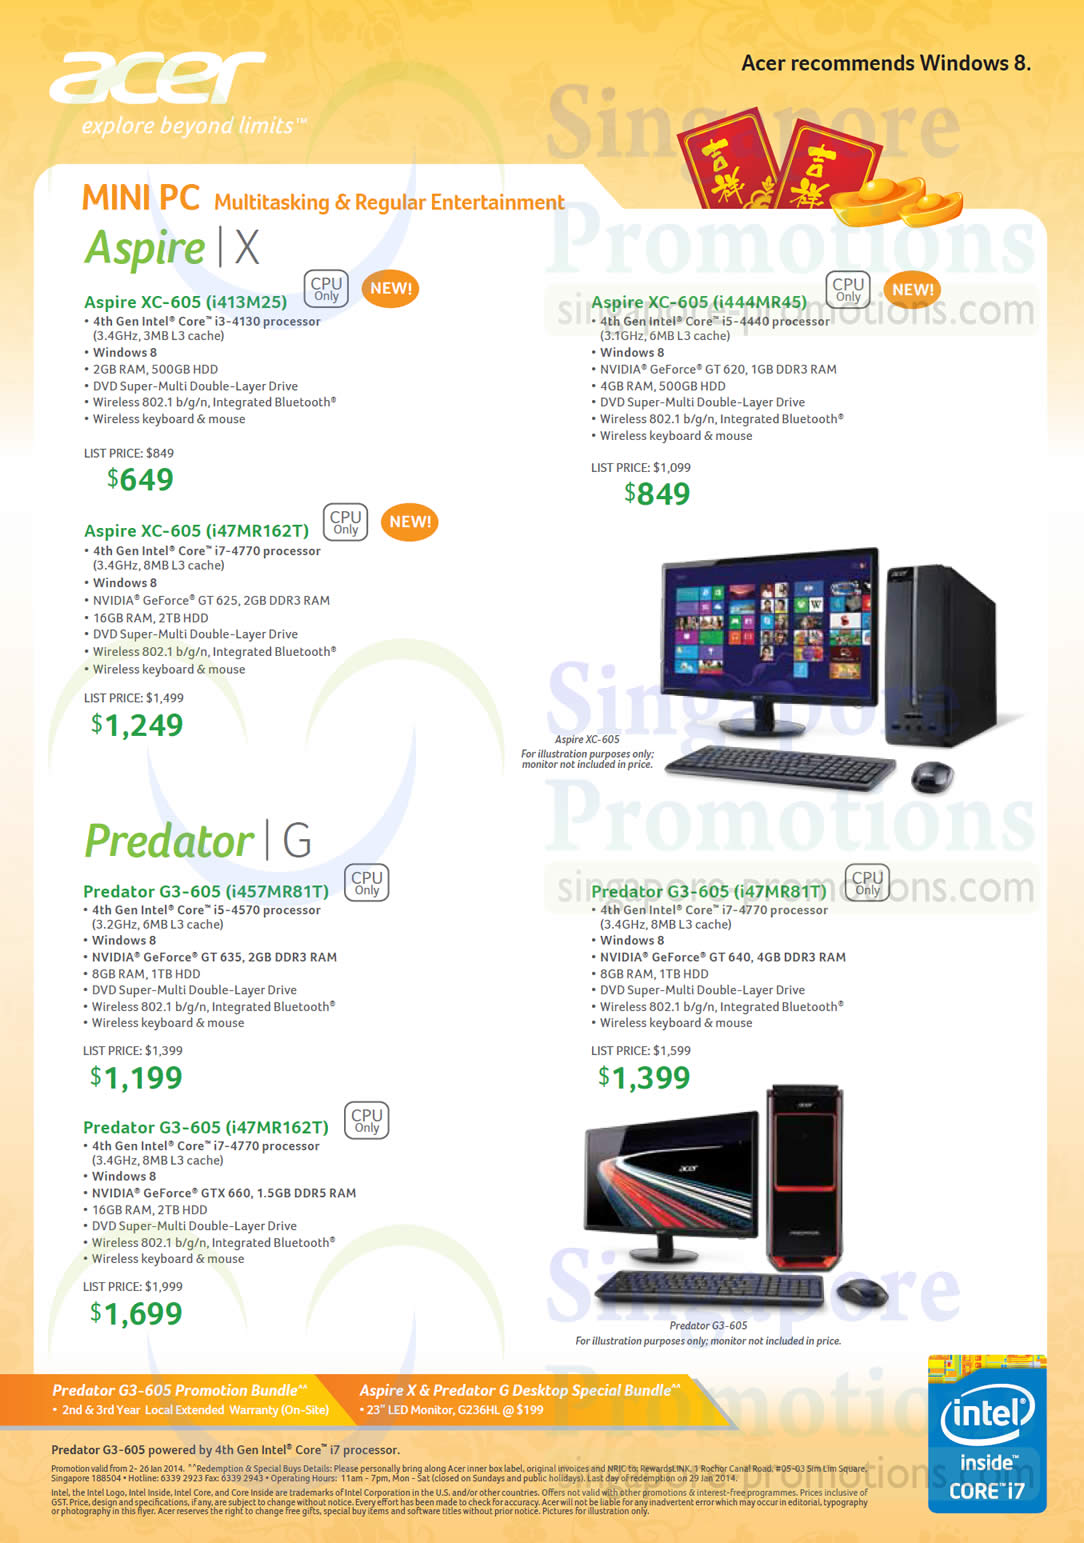 Desktop PCs XC-605 i413M25, XC-605 i444MR45, XC-605 i47MR162T, G3